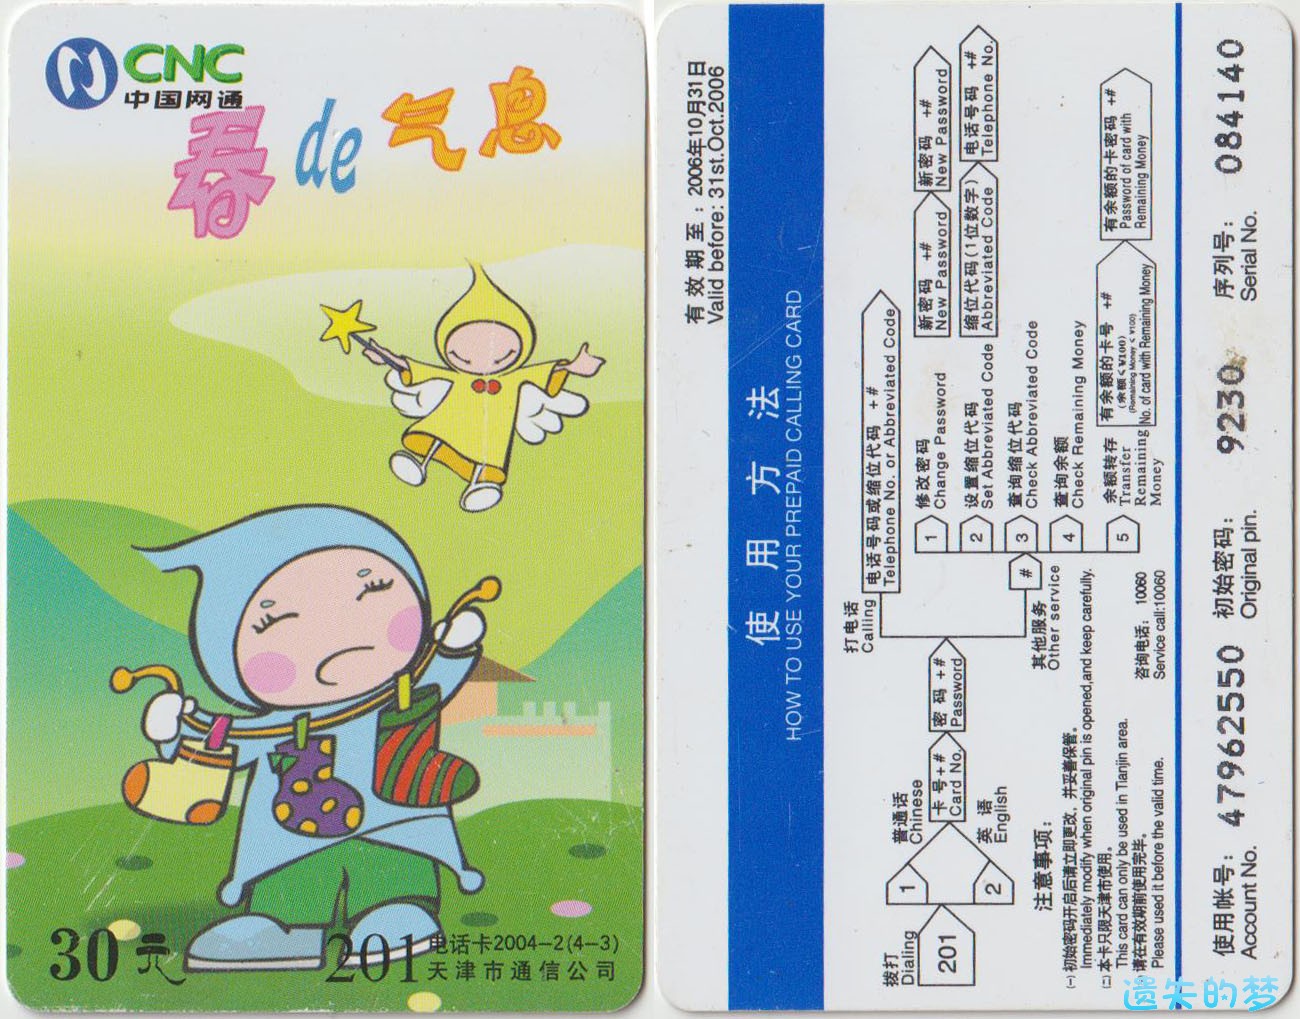 201电话卡2004-2(4-3).jpg